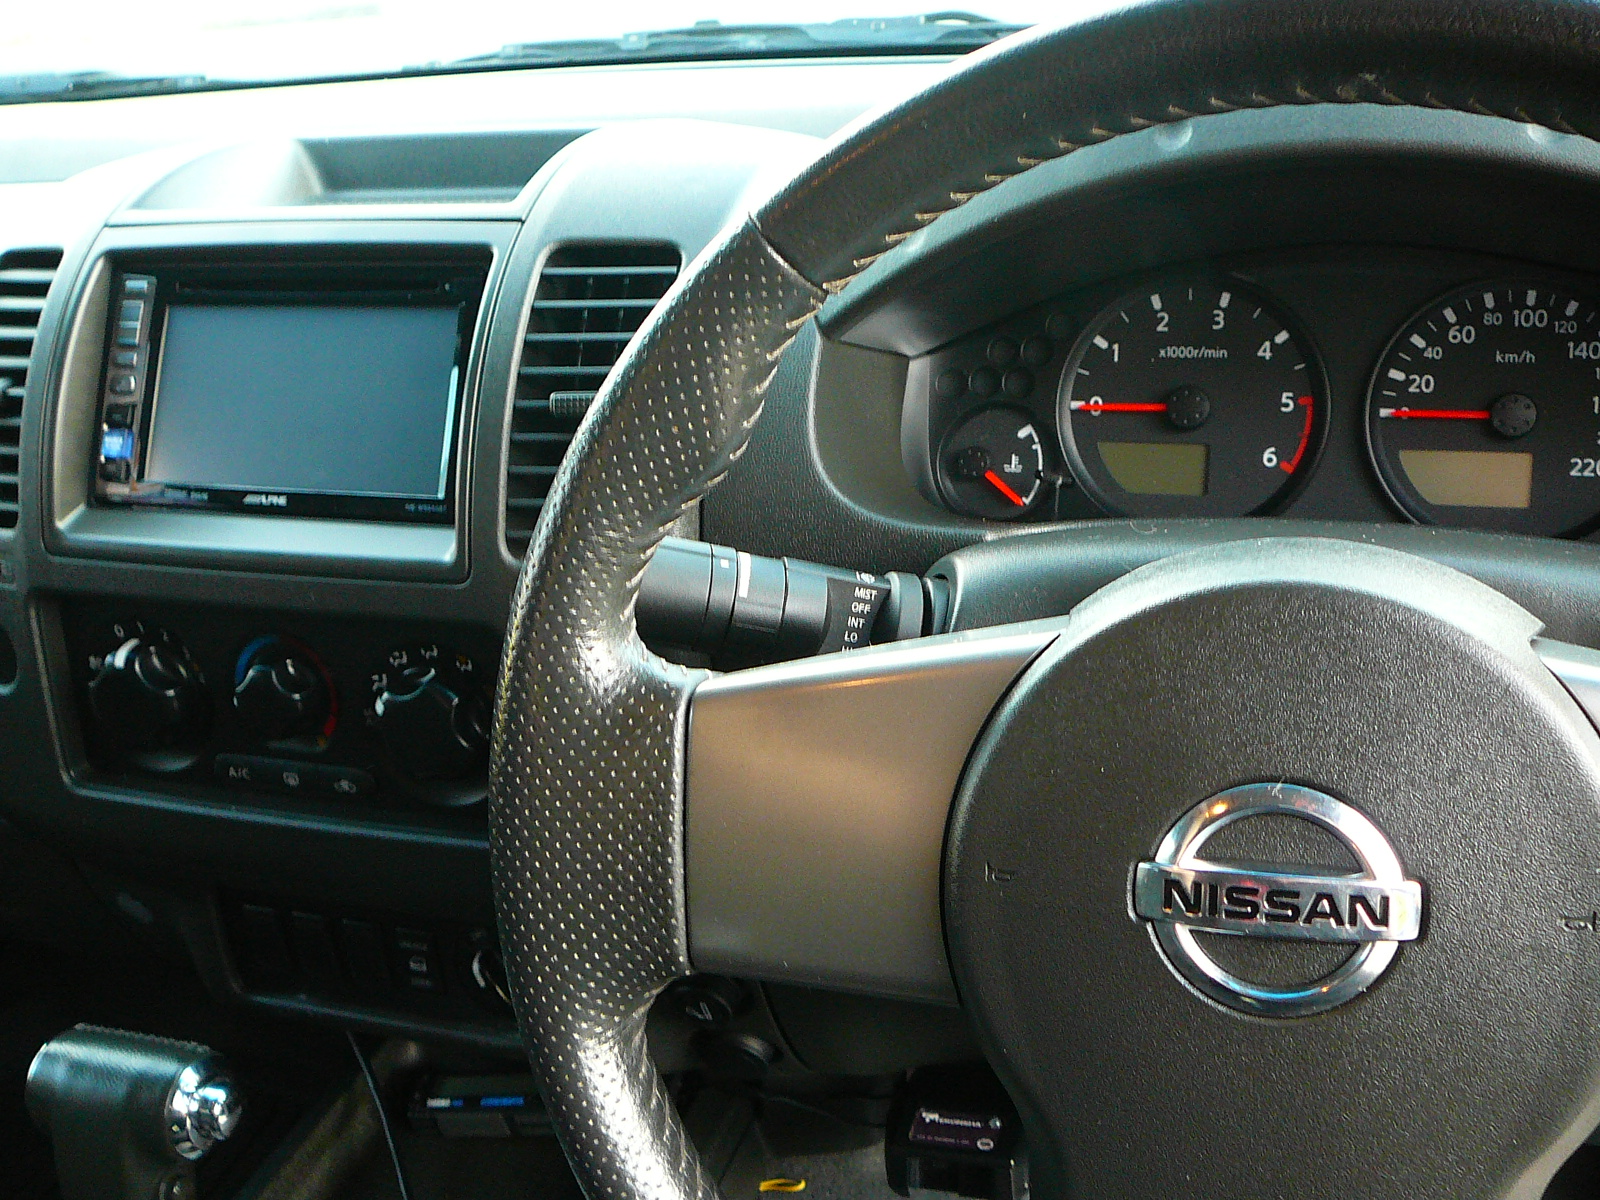 Nissan Navara D40, Alpine INE-W940 In Dash GPS Navigation System